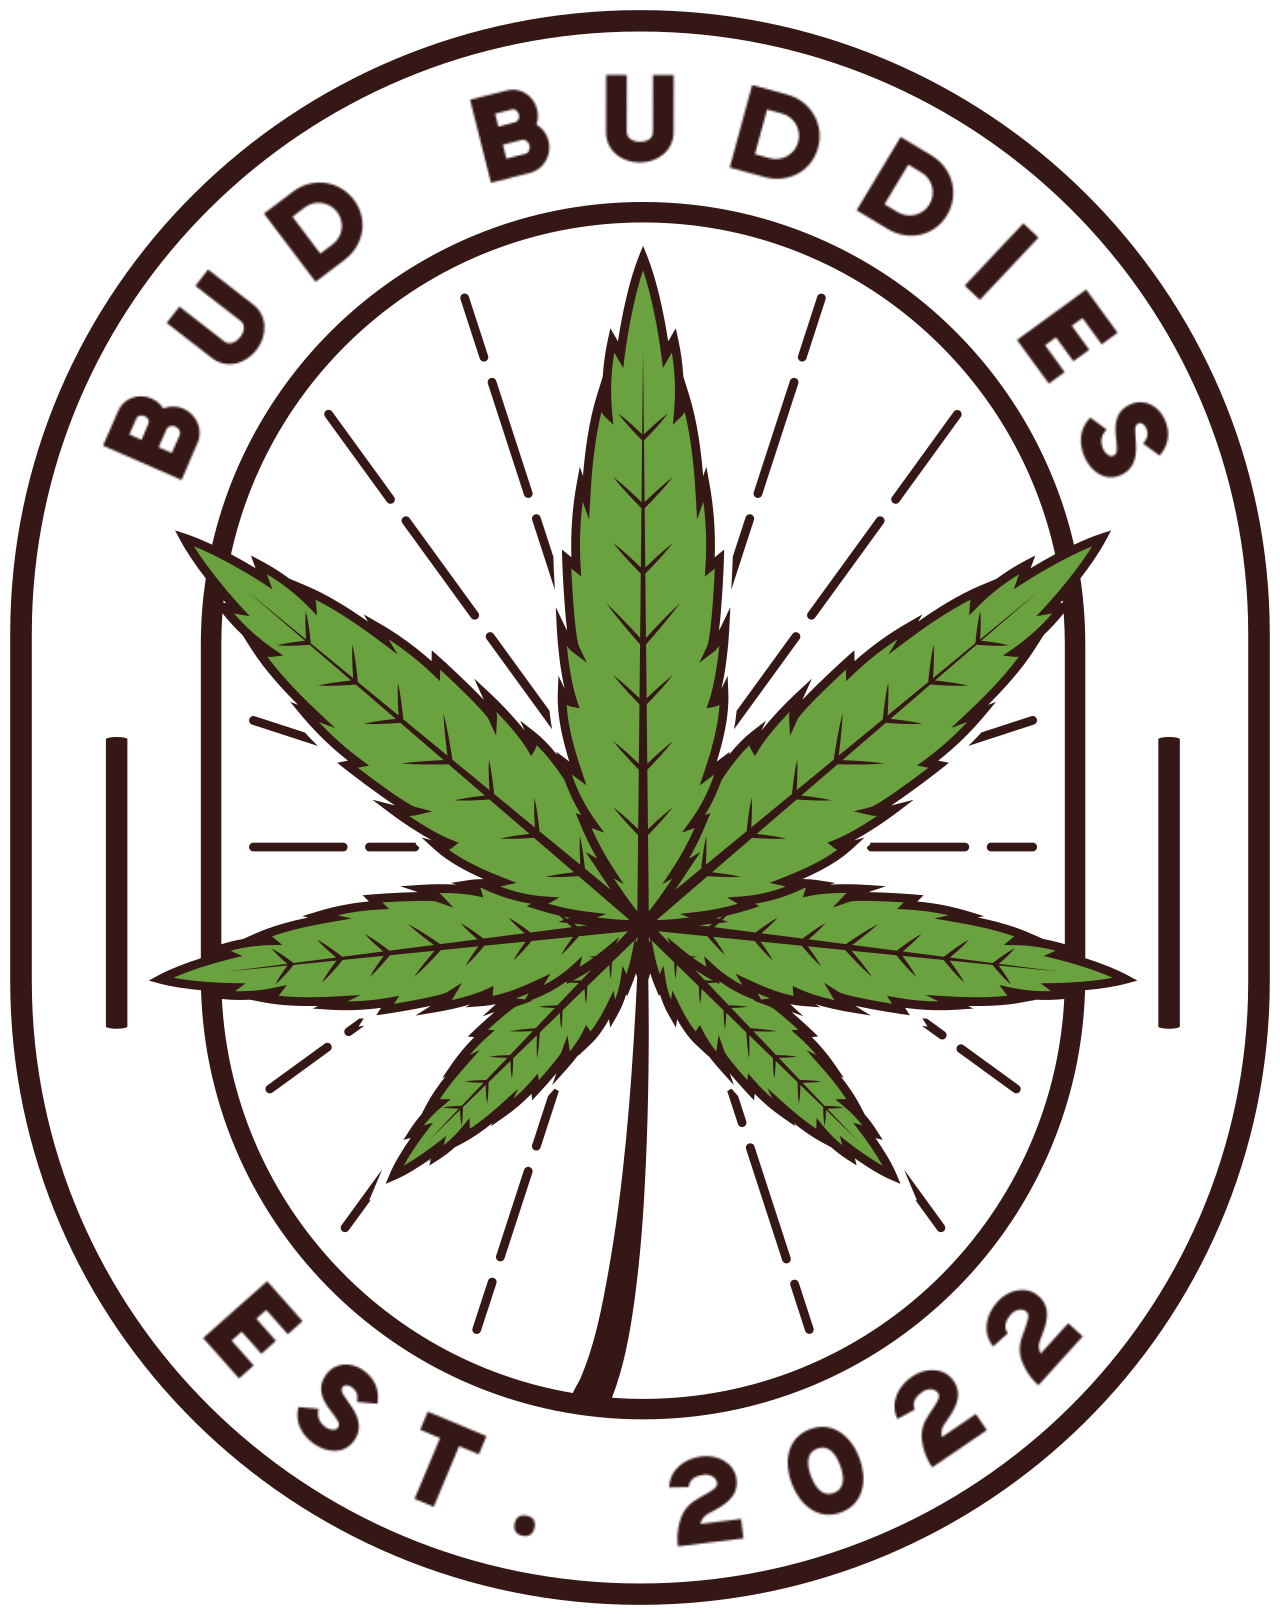 Bud Buddies's web page